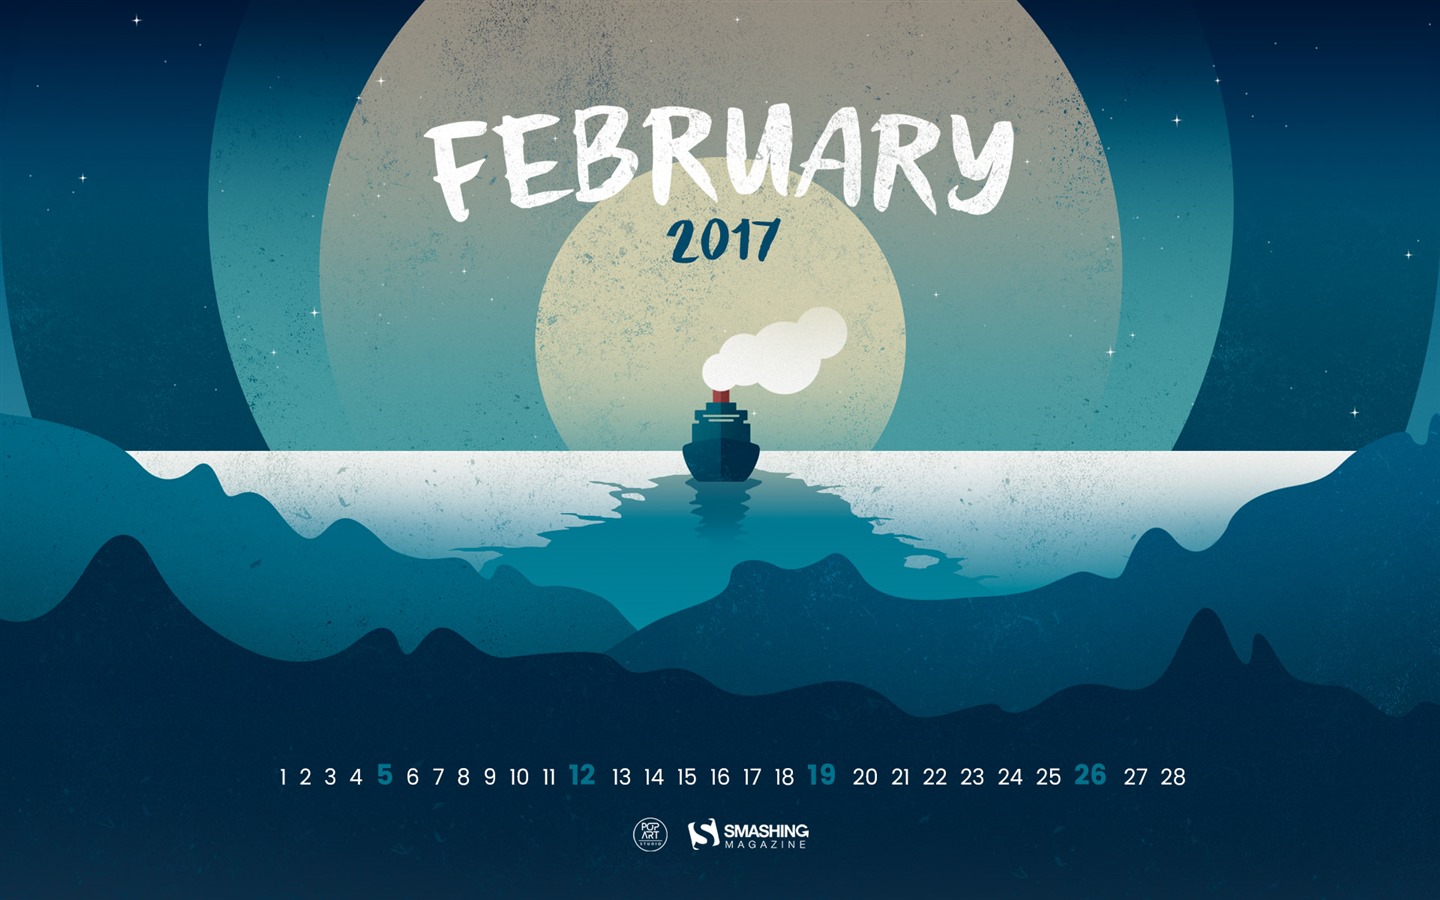 February 2017 calendar wallpaper (2) #2 - 1440x900